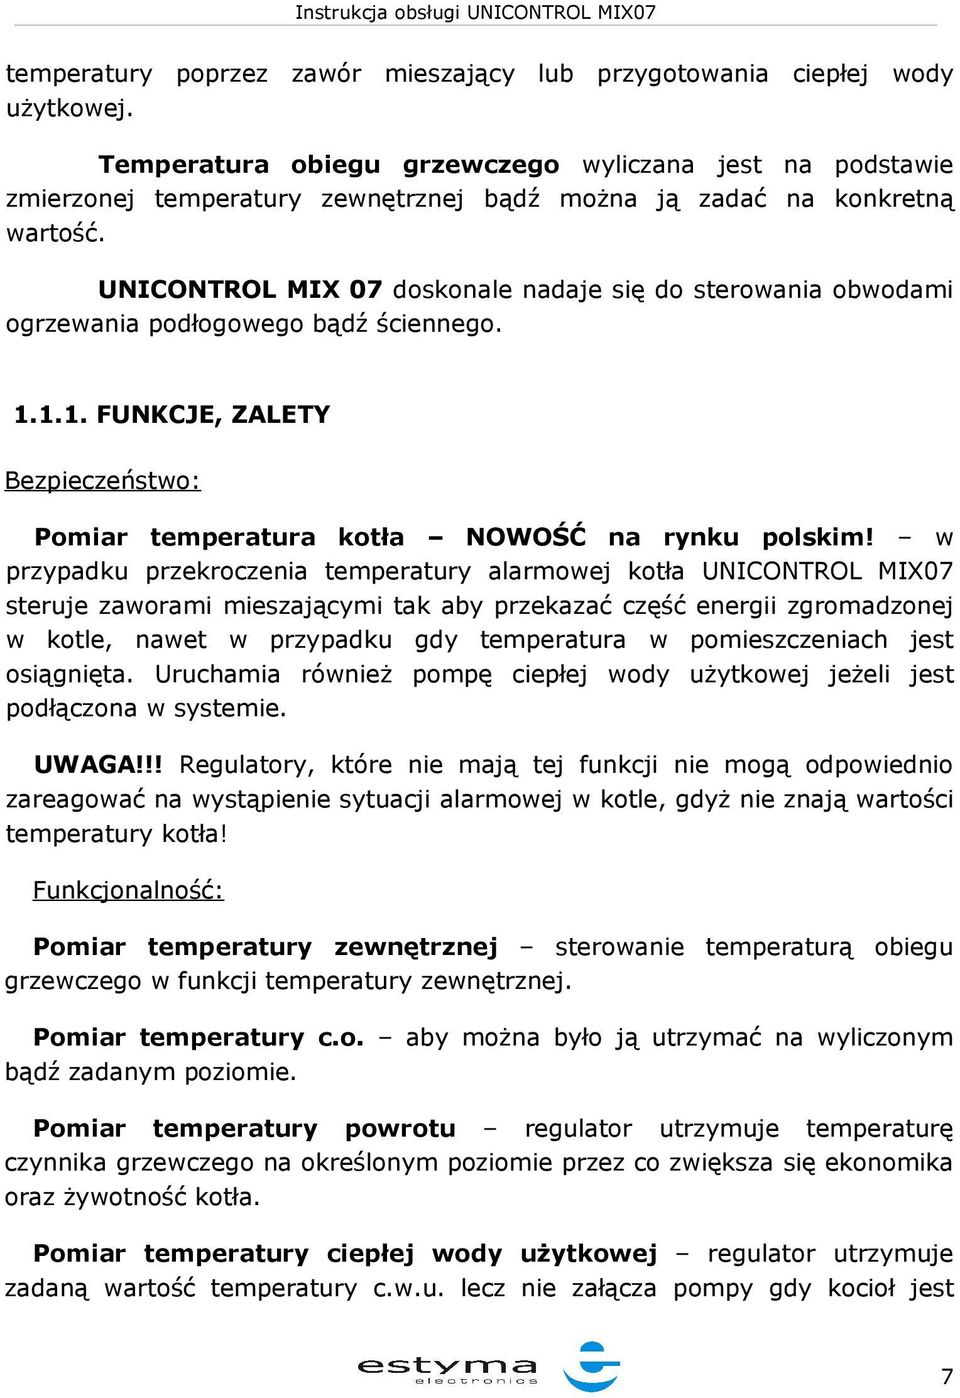 UNICONTROL MIX 07 doskonale nadaje się do sterowania obwodami ogrzewania podłogowego bądź ściennego. 1.1.1. FUNKCJE, ZALETY Bezpieczeństwo: Pomiar temperatura kotła NOWOŚĆ na rynku polskim!